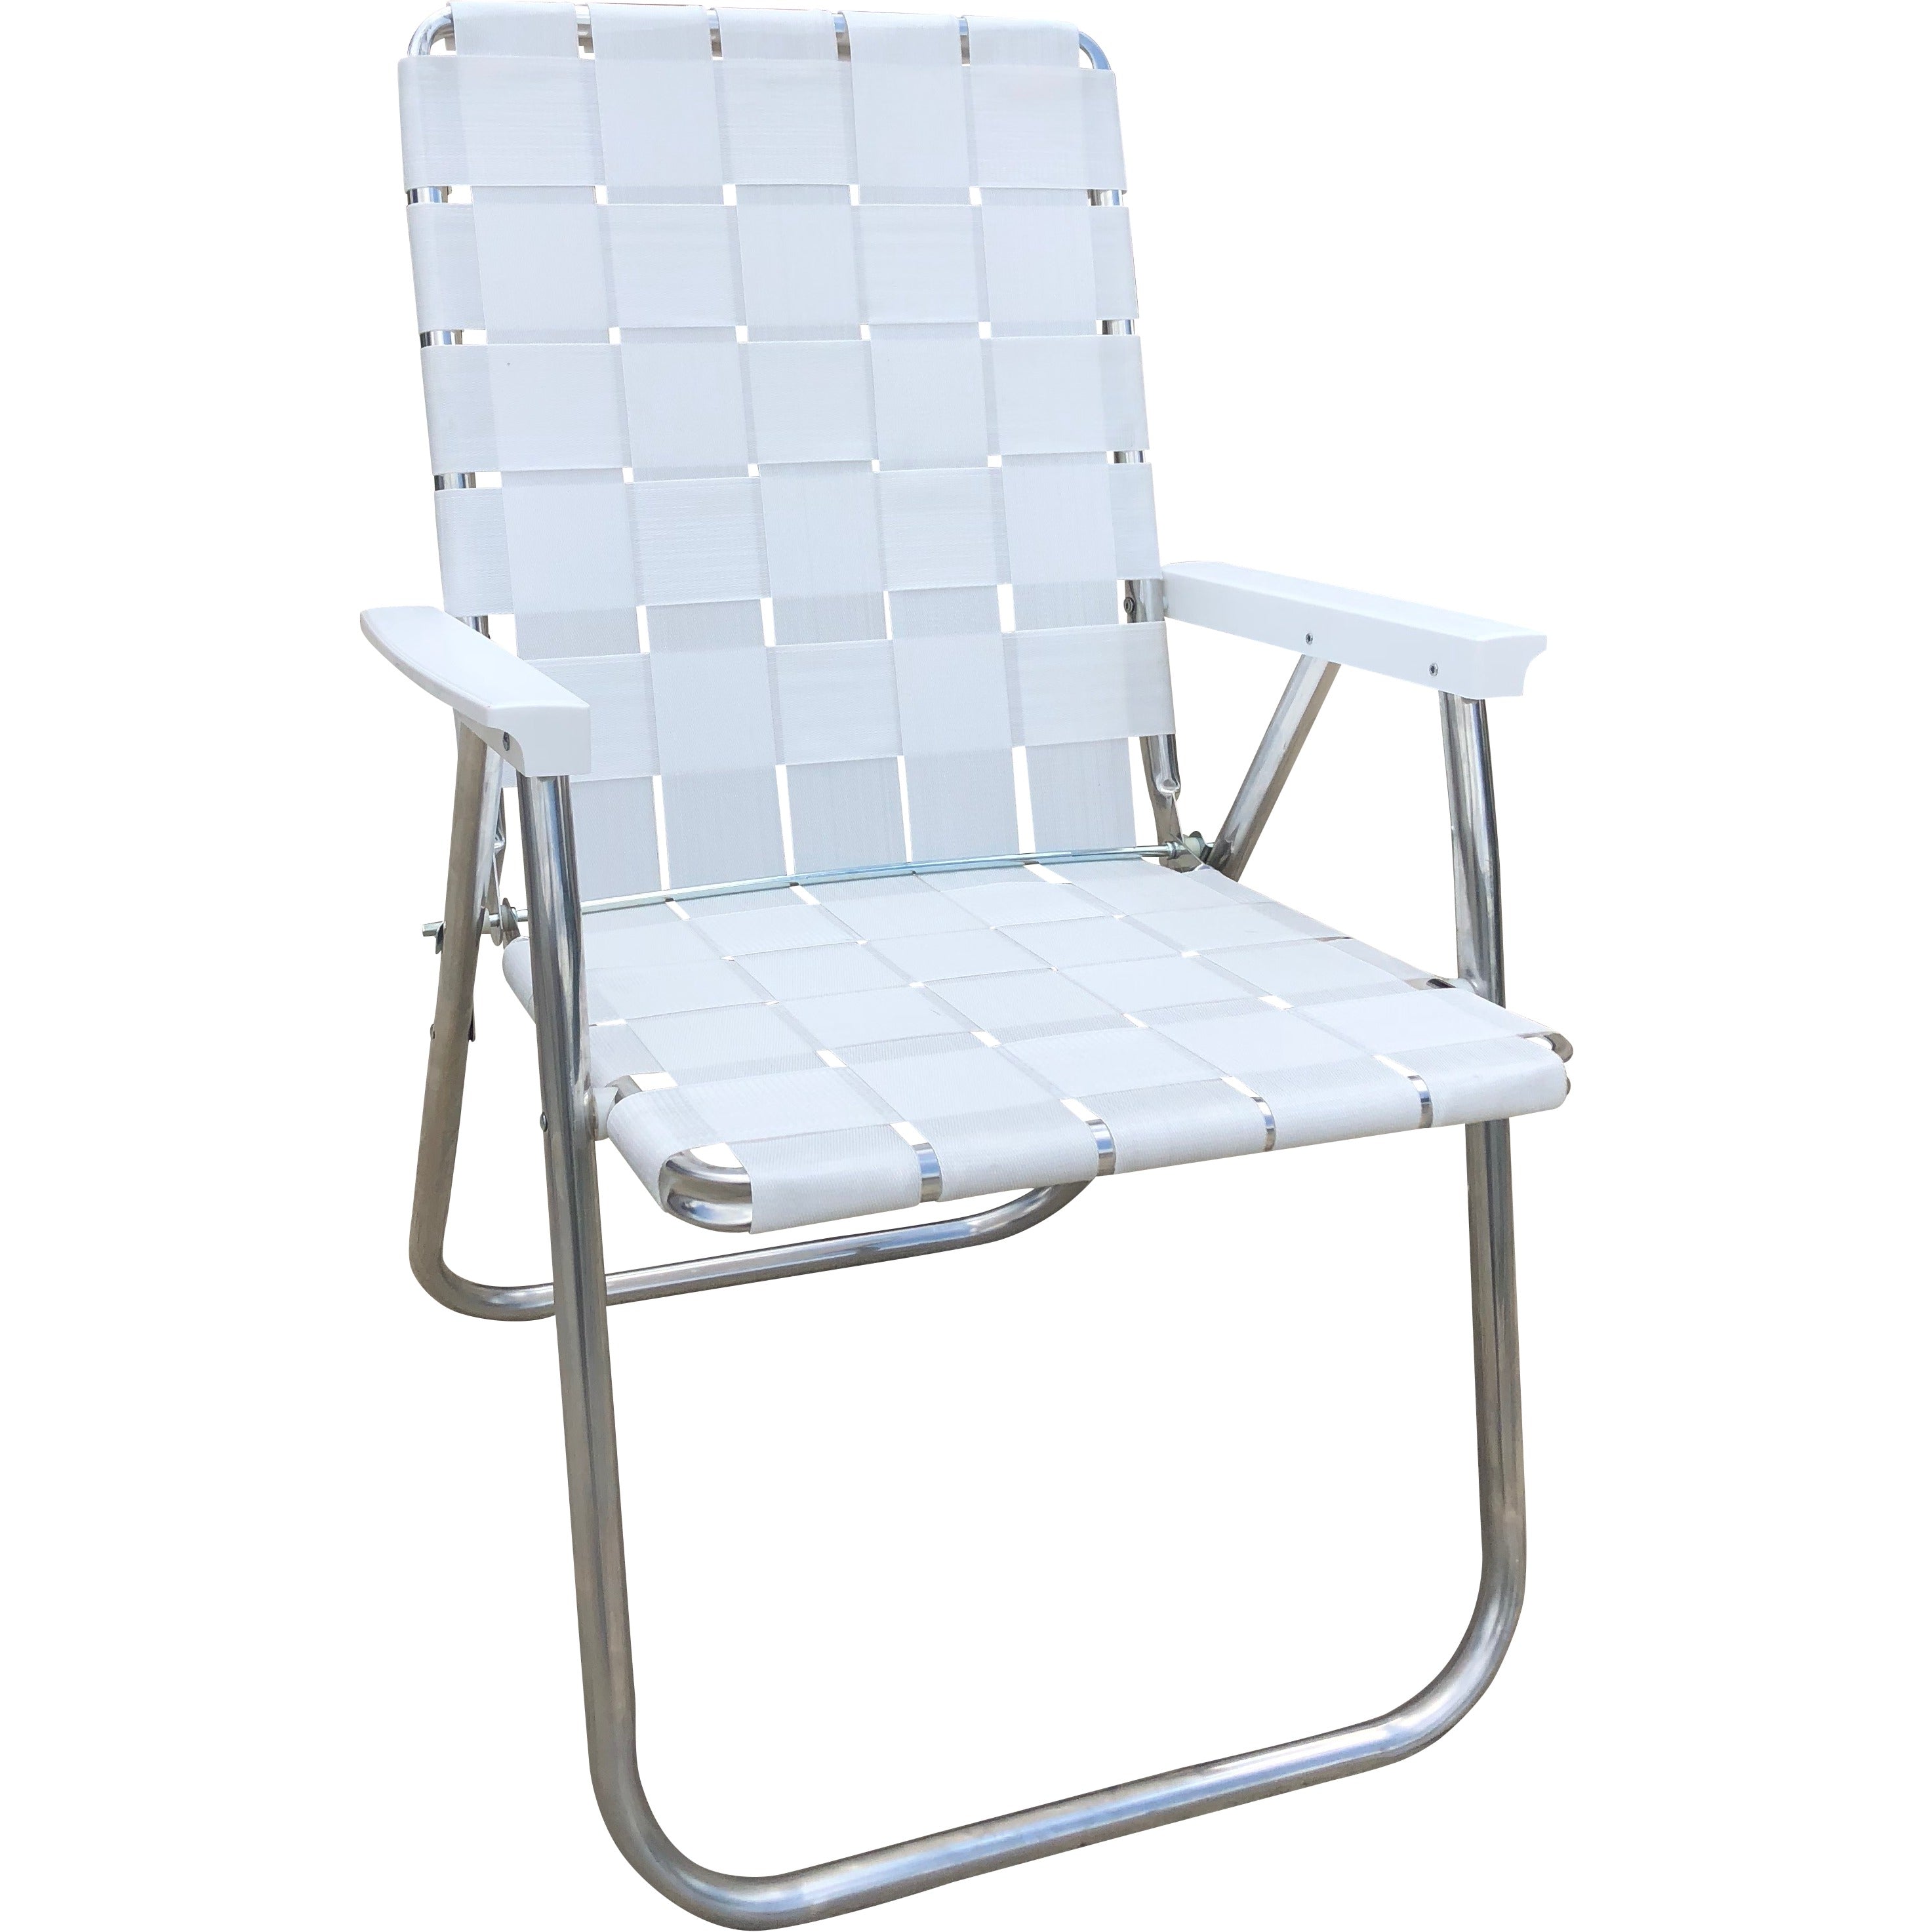 Bright White Classic Chair Lawn Chair USA Aluminum Folding